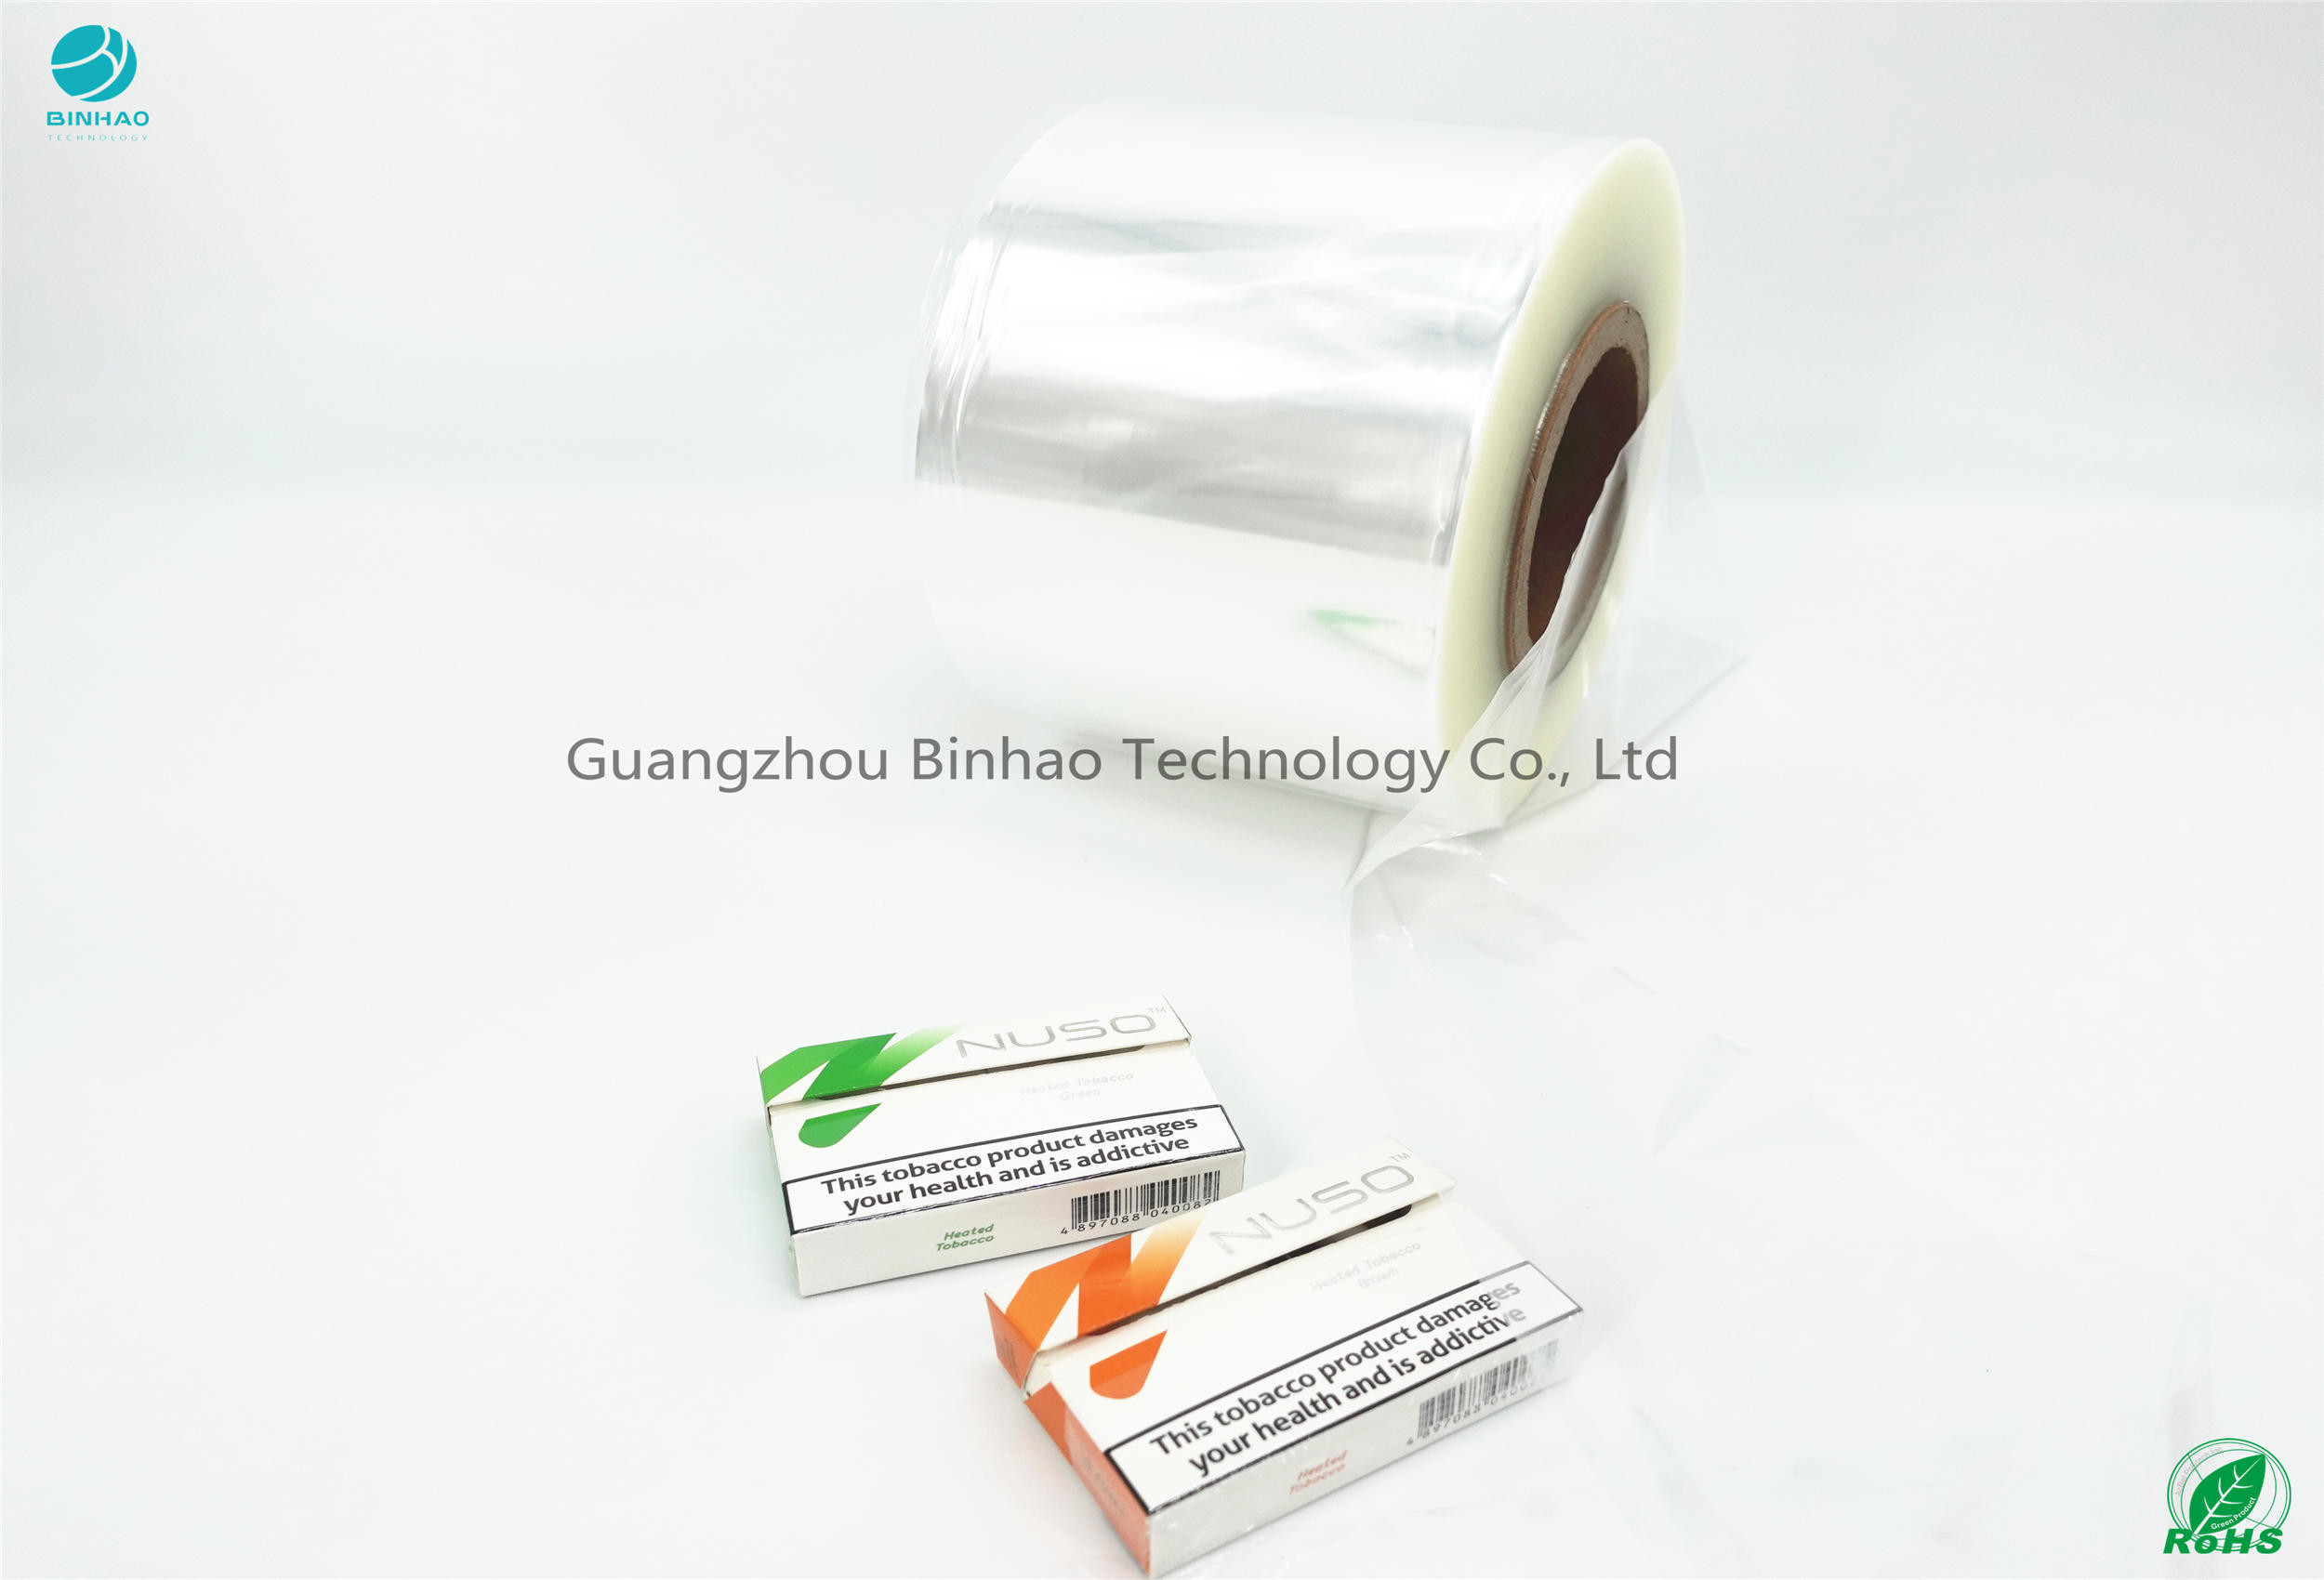 HNB E-Cigareatte วัสดุบรรจุภัณฑ์กล่องกระดาษแก้วห่อความกว้าง 50